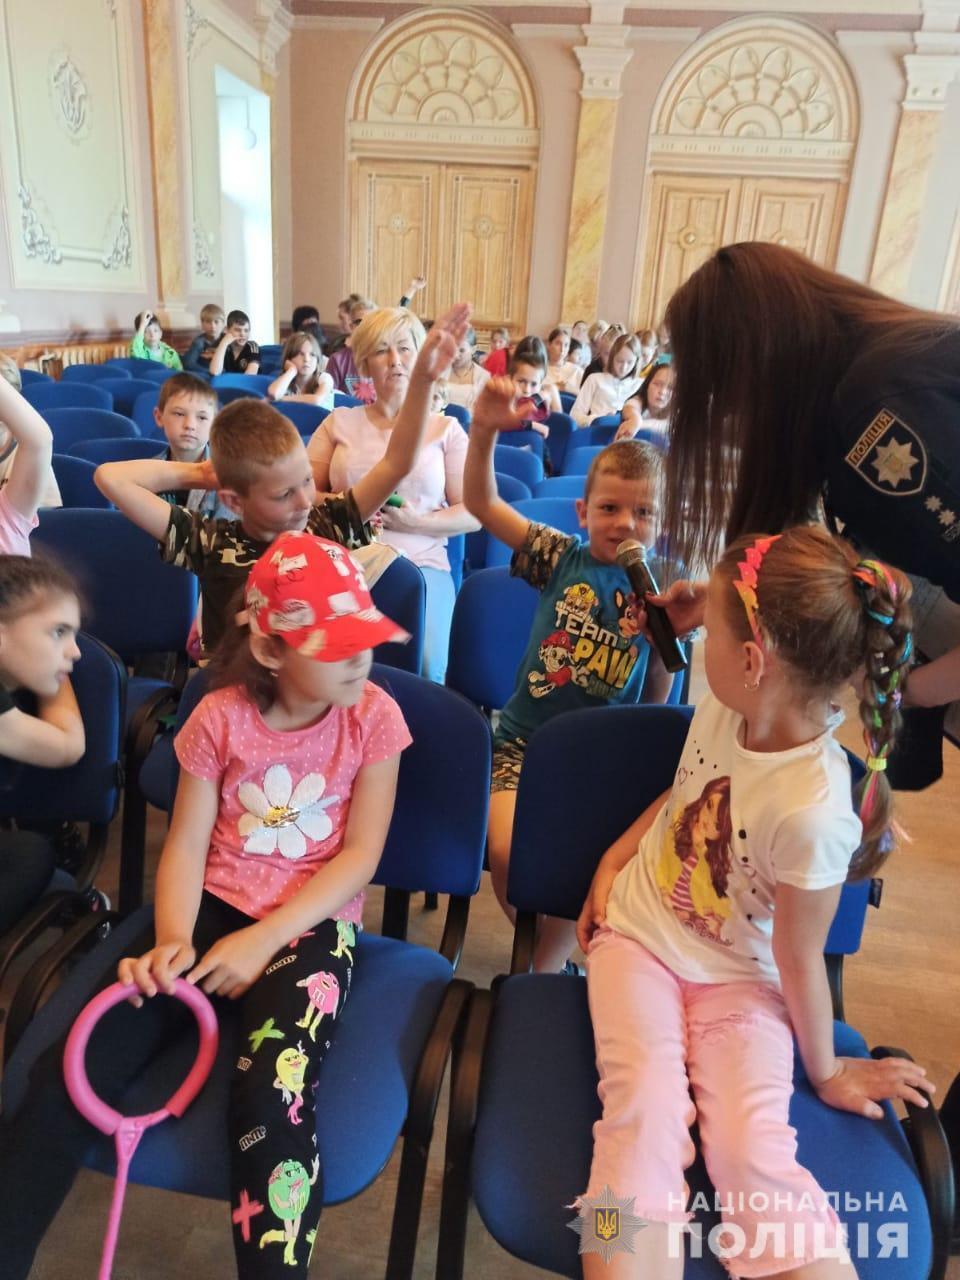 Поліція Одещини: канікули мають запам’ятатися дітям лише приємними пригодами